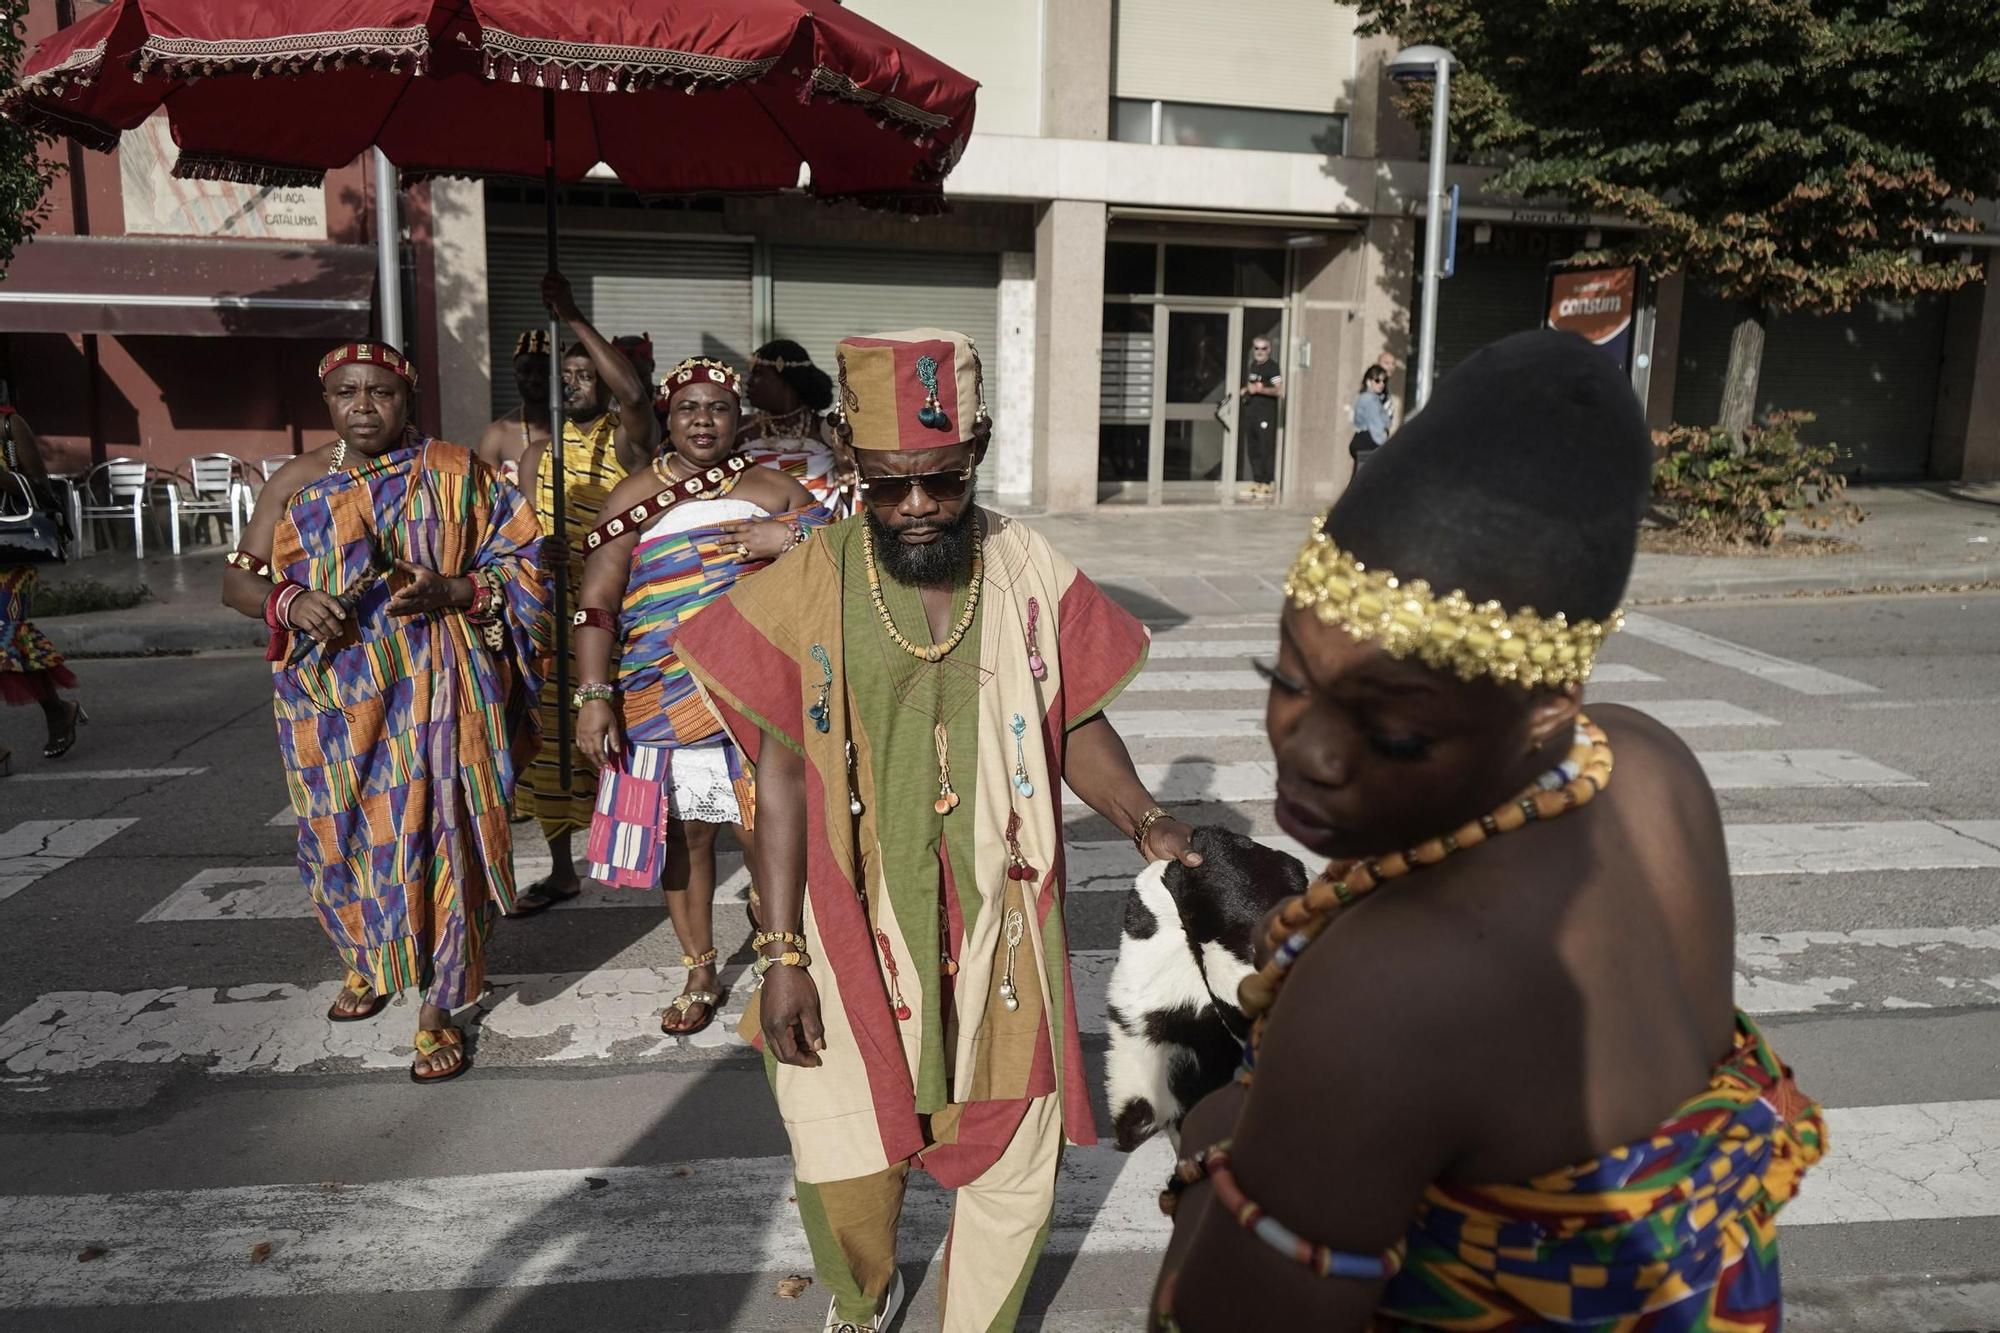 Totes les imatges de la festa solidària de la comunitat de Ghana